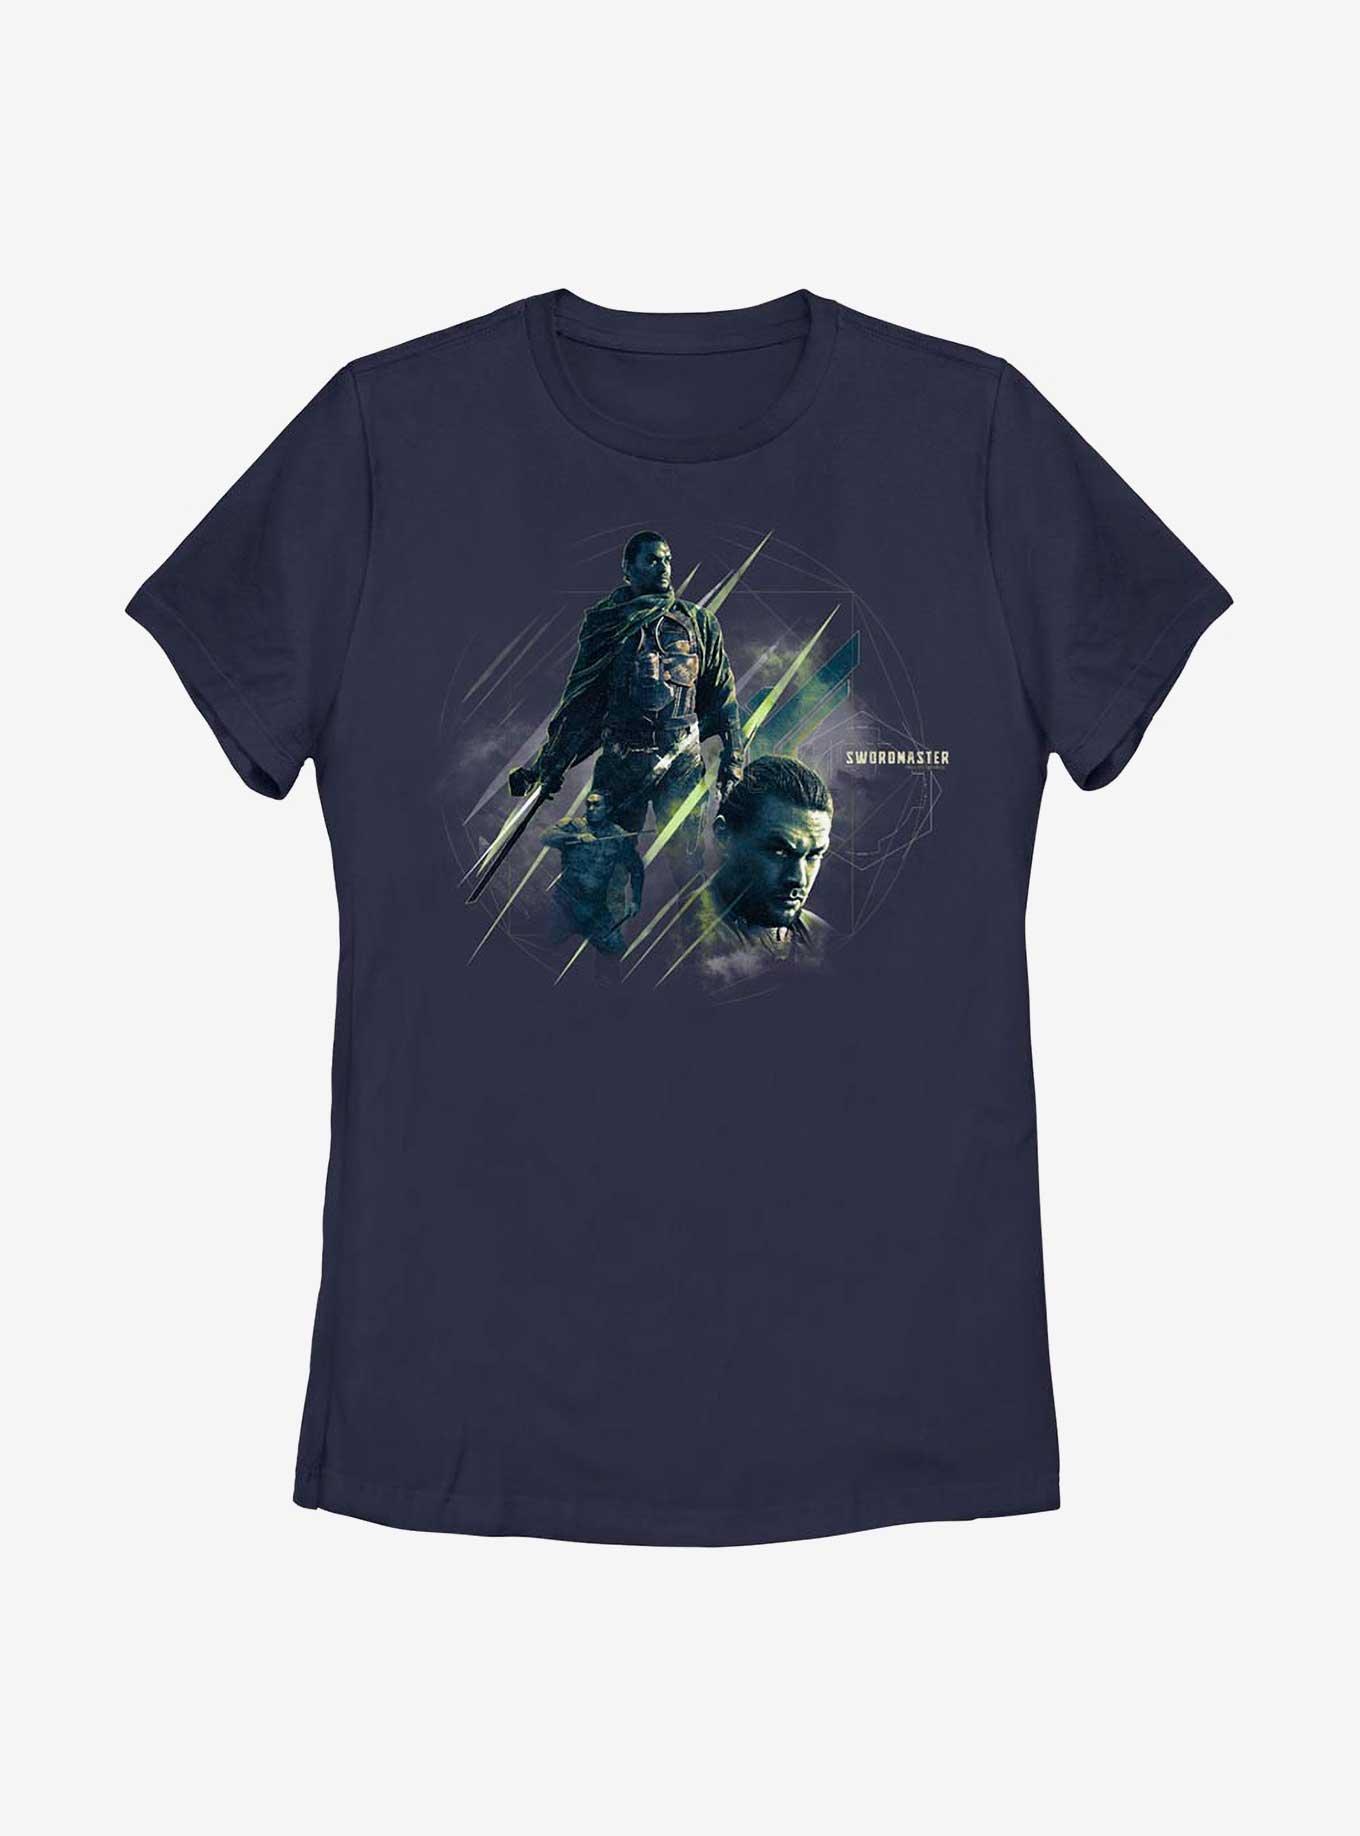 Dune Swordmaster Womens T-Shirt, NAVY, hi-res